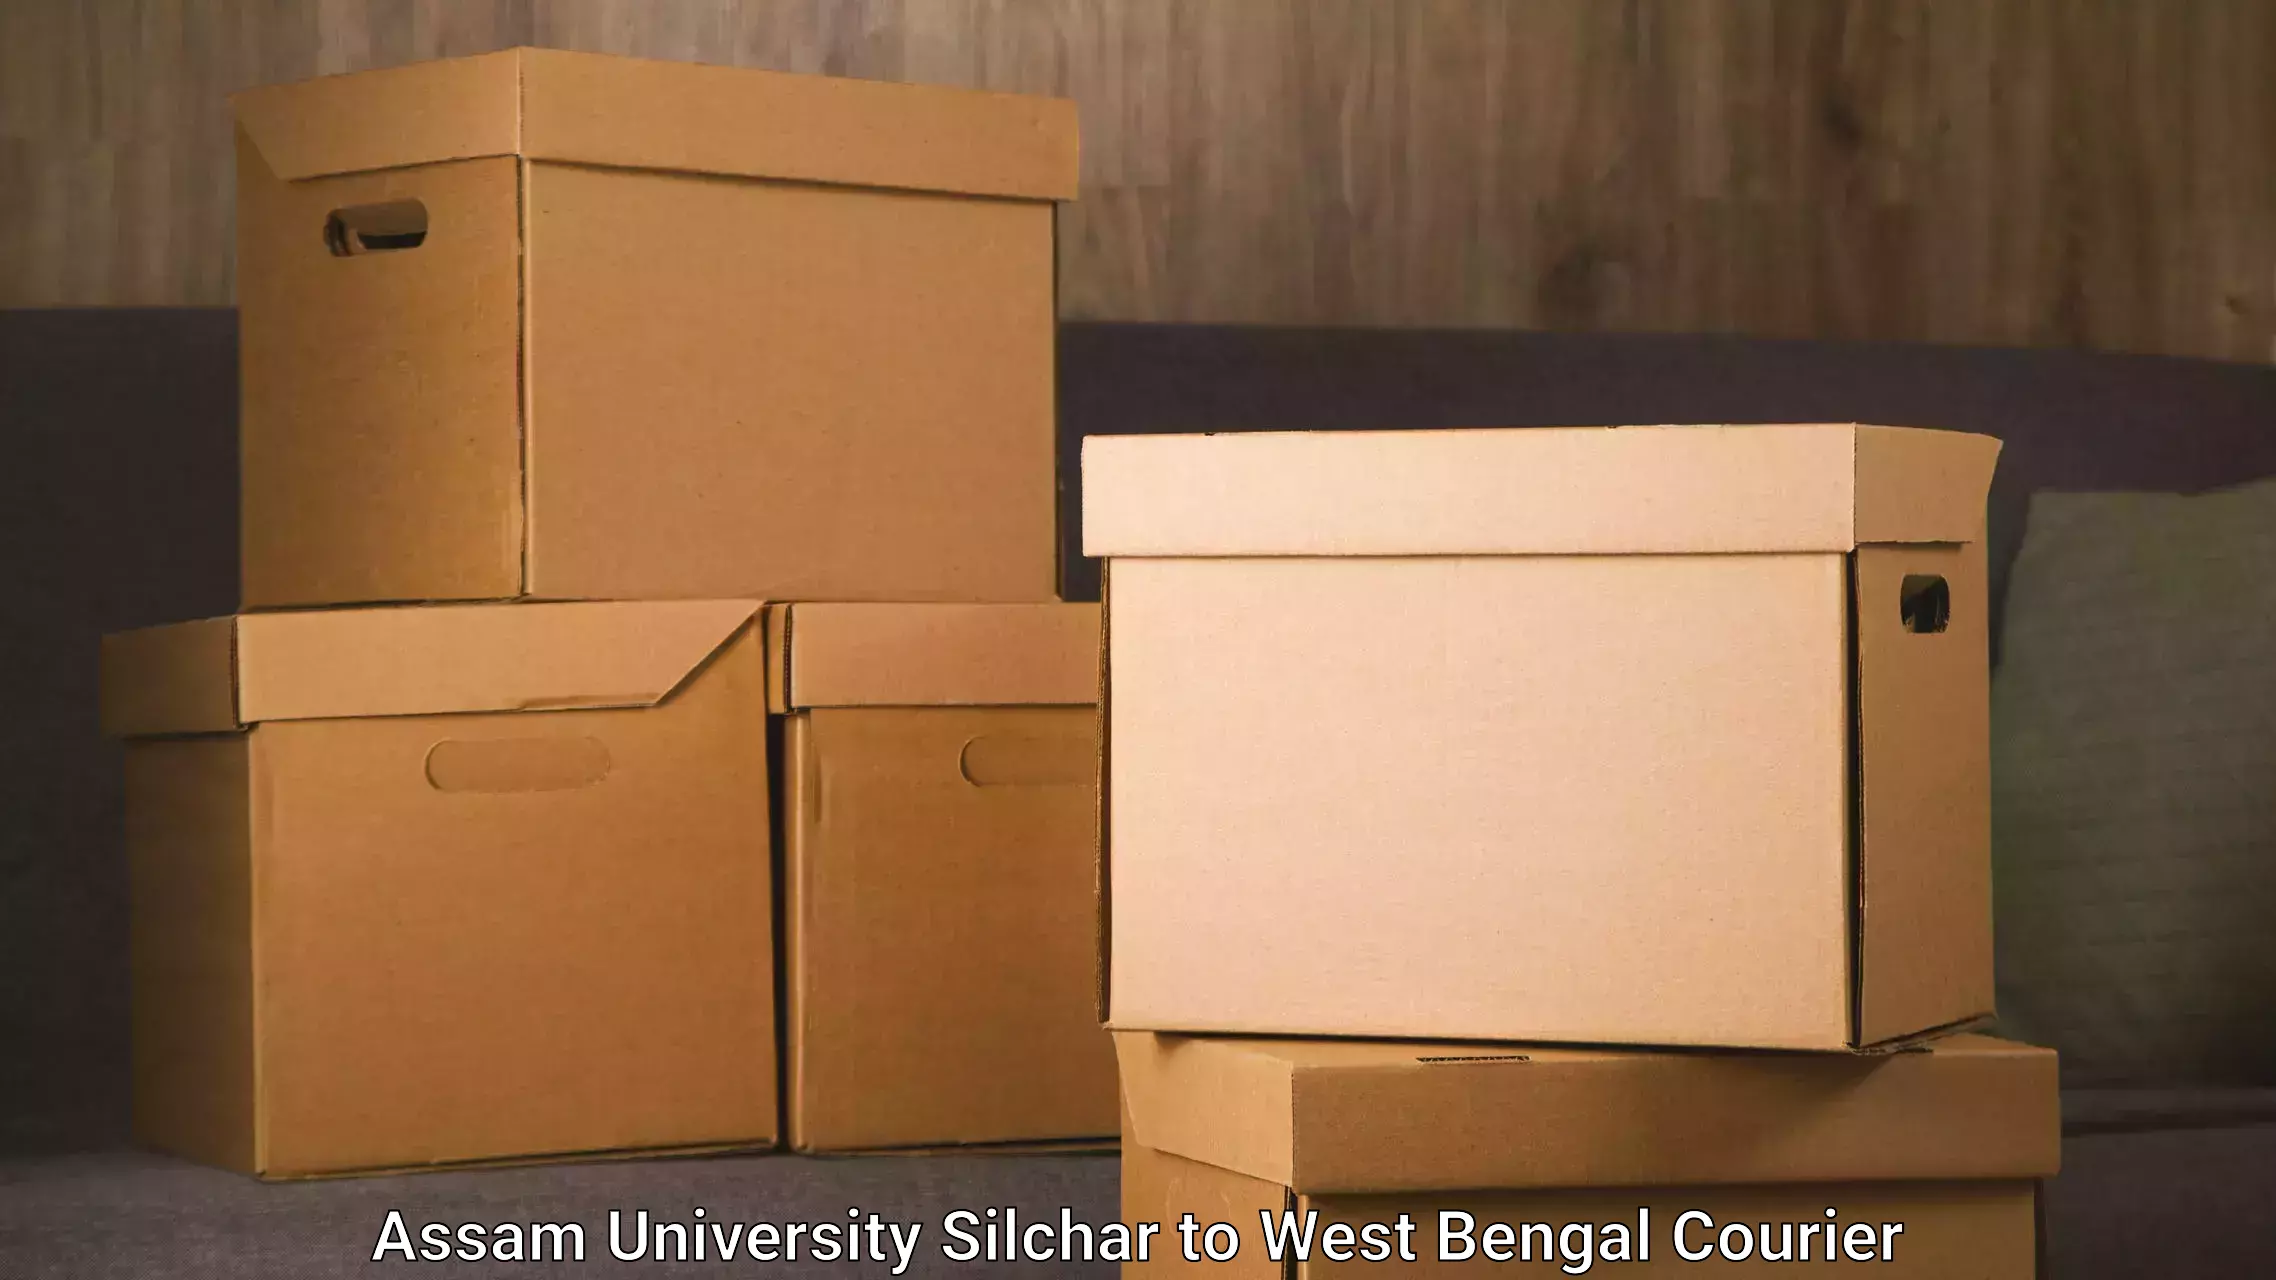 Courier service comparison Assam University Silchar to West Bengal